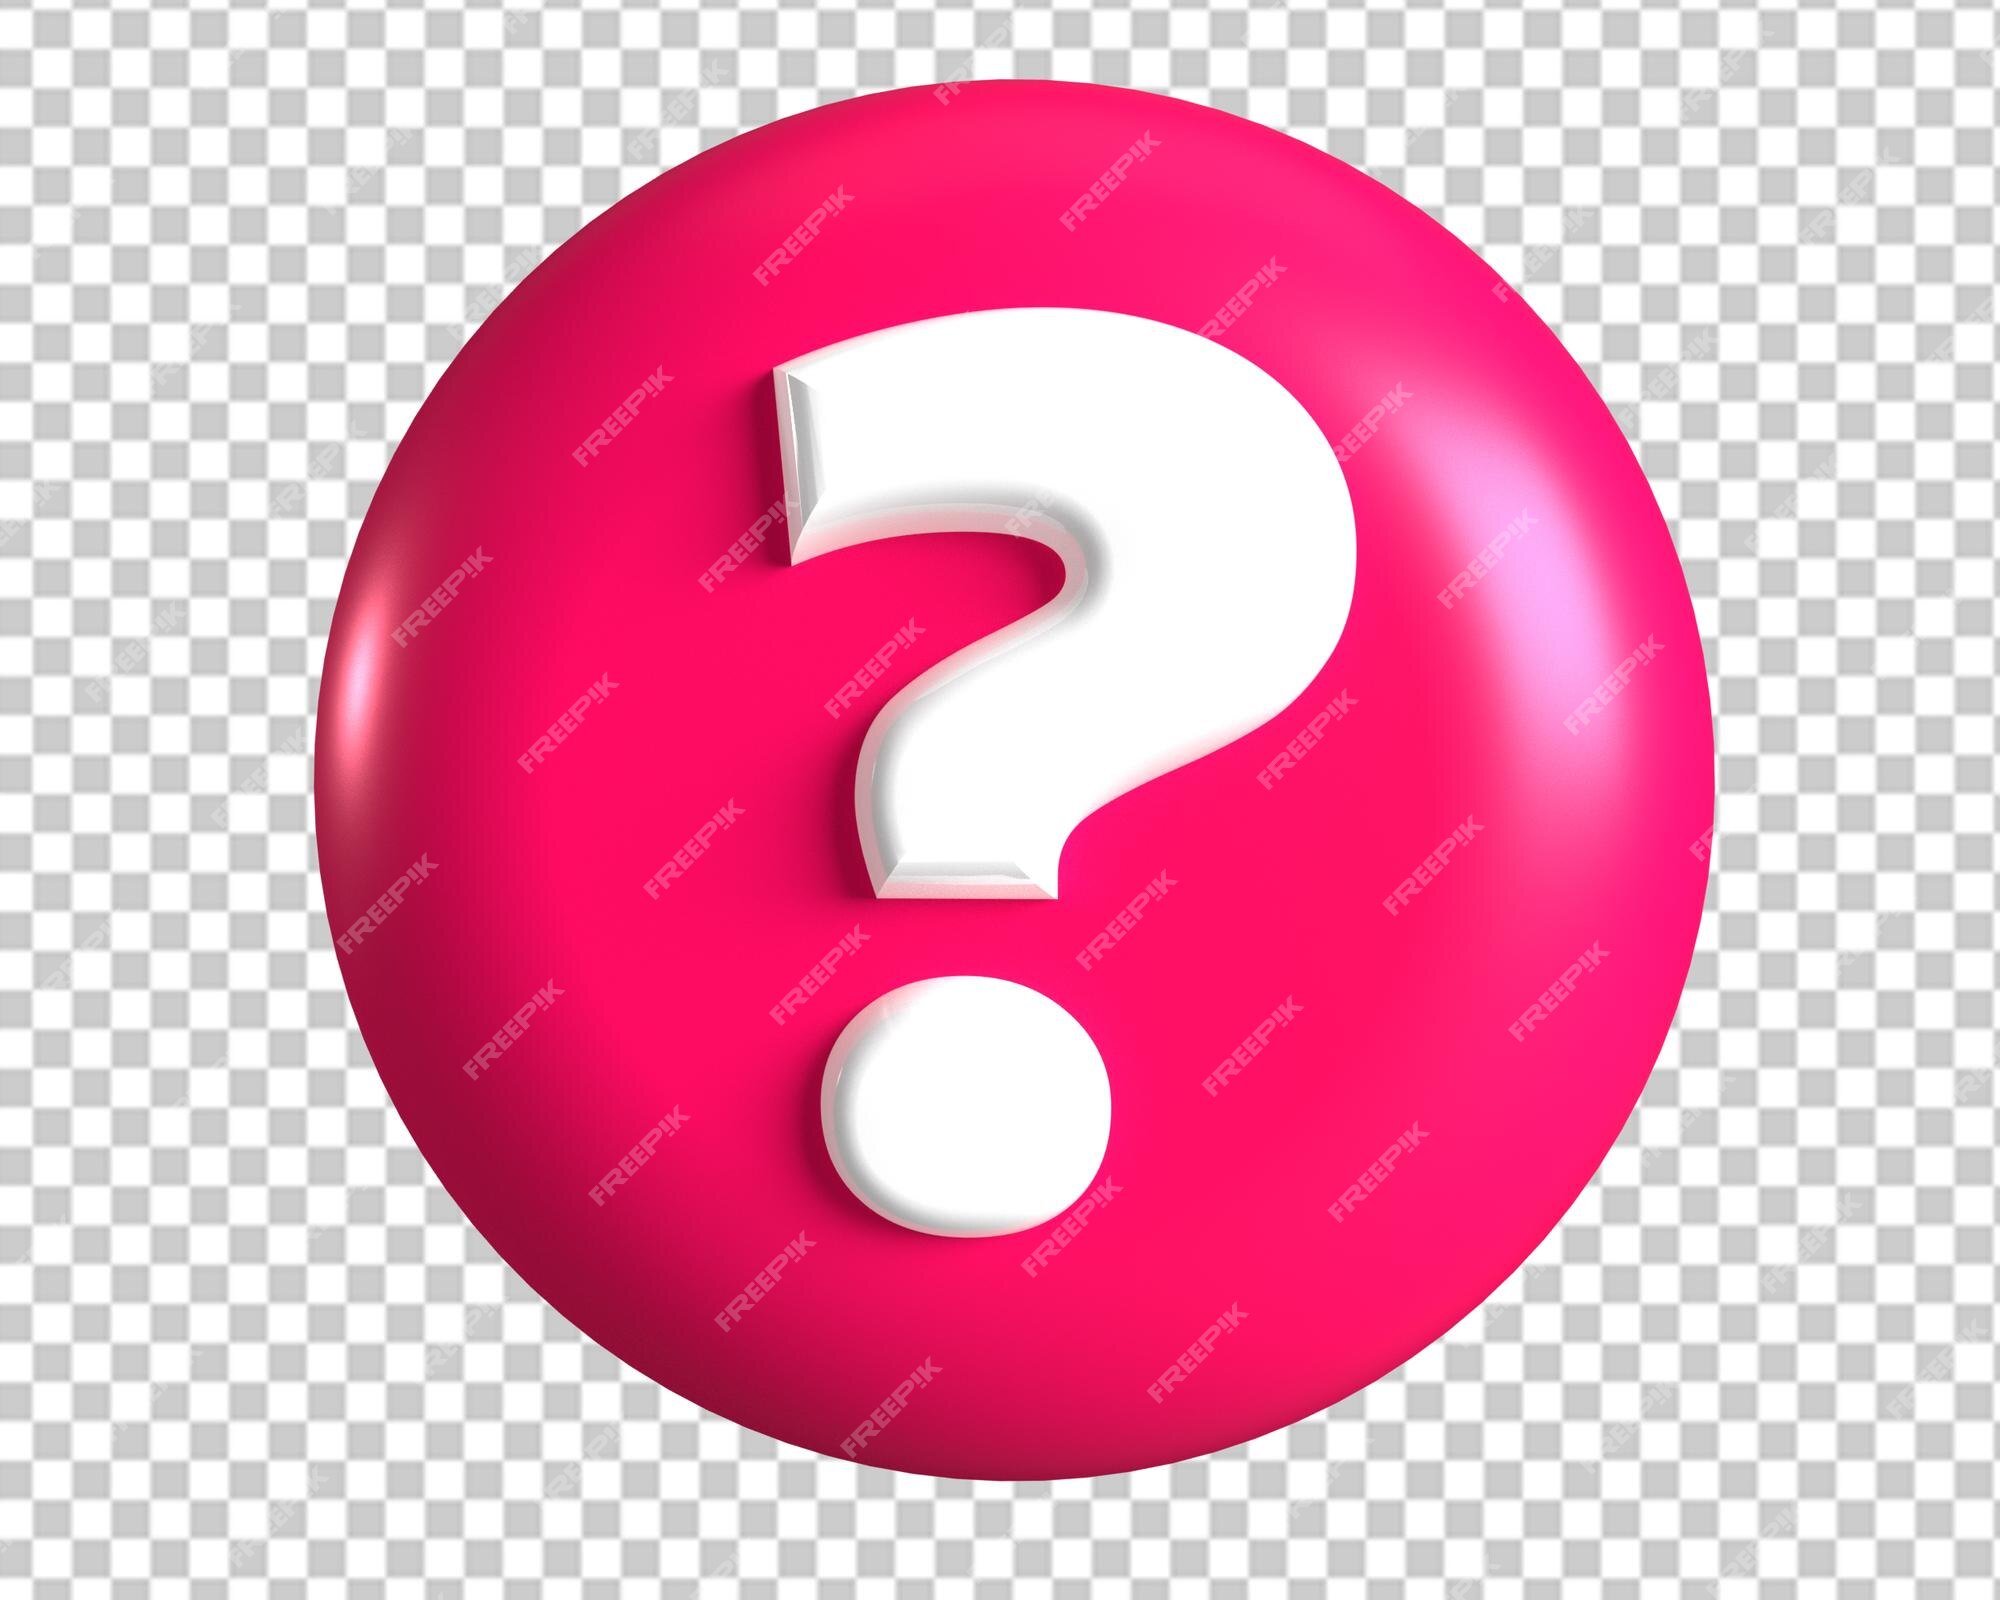 Biểu tượng dấu hỏi màu hồng đầy mê hoặc có sẵn ở định dạng PSD chuyên nghiệp. Hãy tải xuống và sử dụng ngay hôm nay!